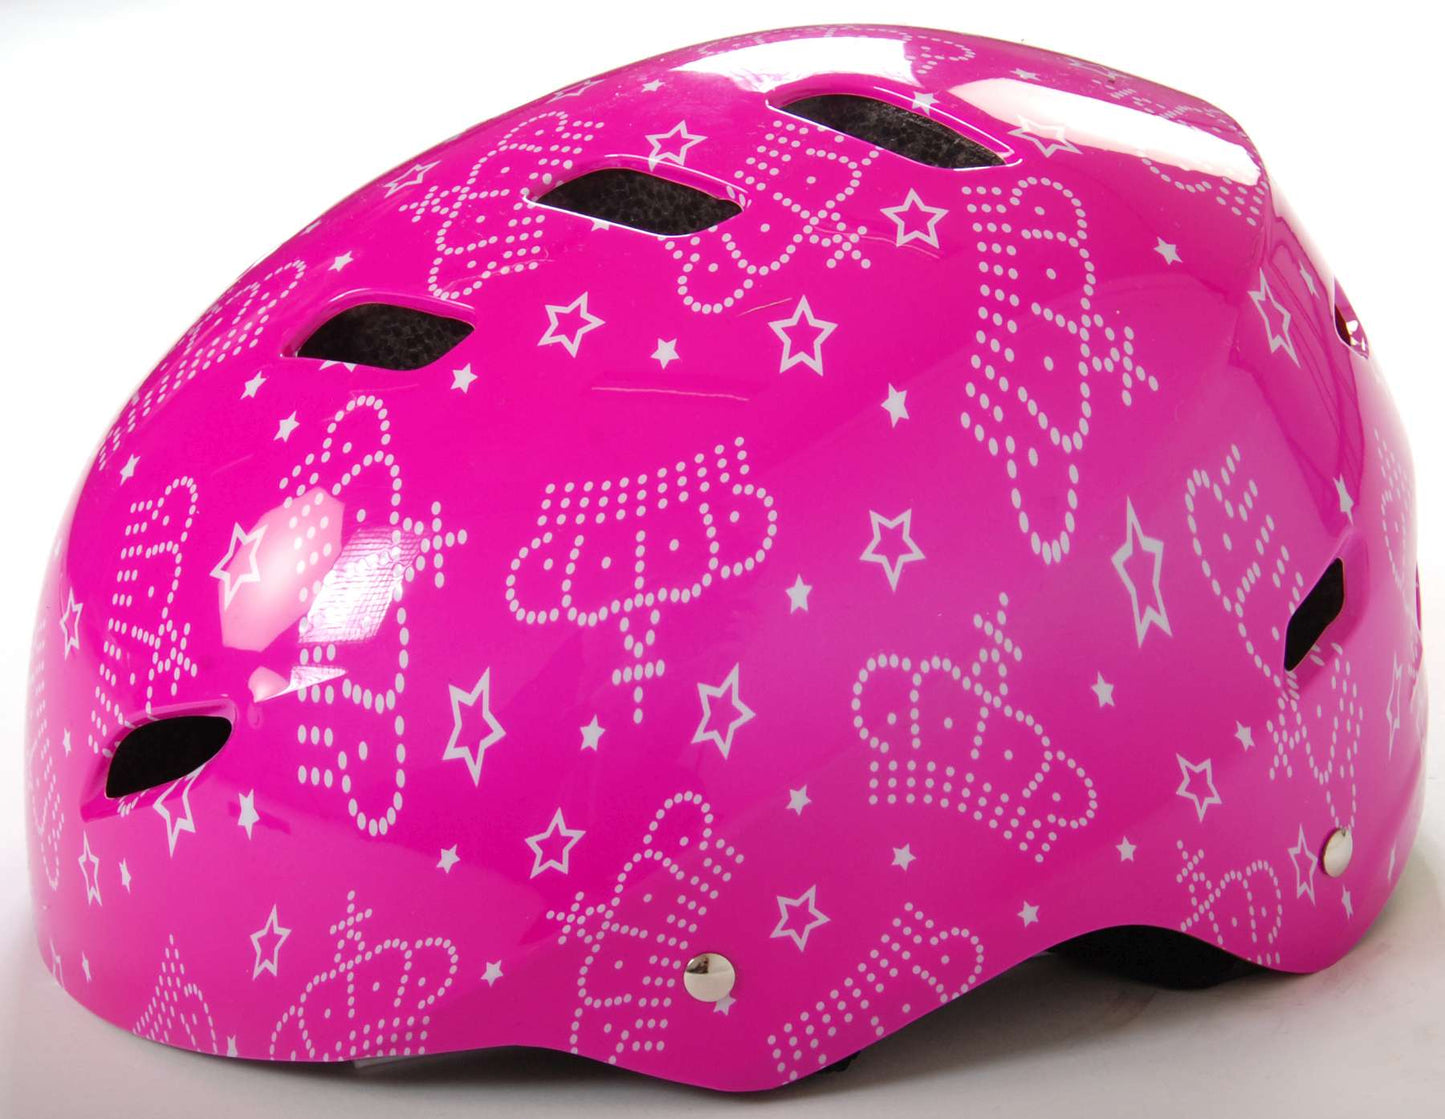 Casco per skate per biciclette Volare - rosa - 55-57 cm